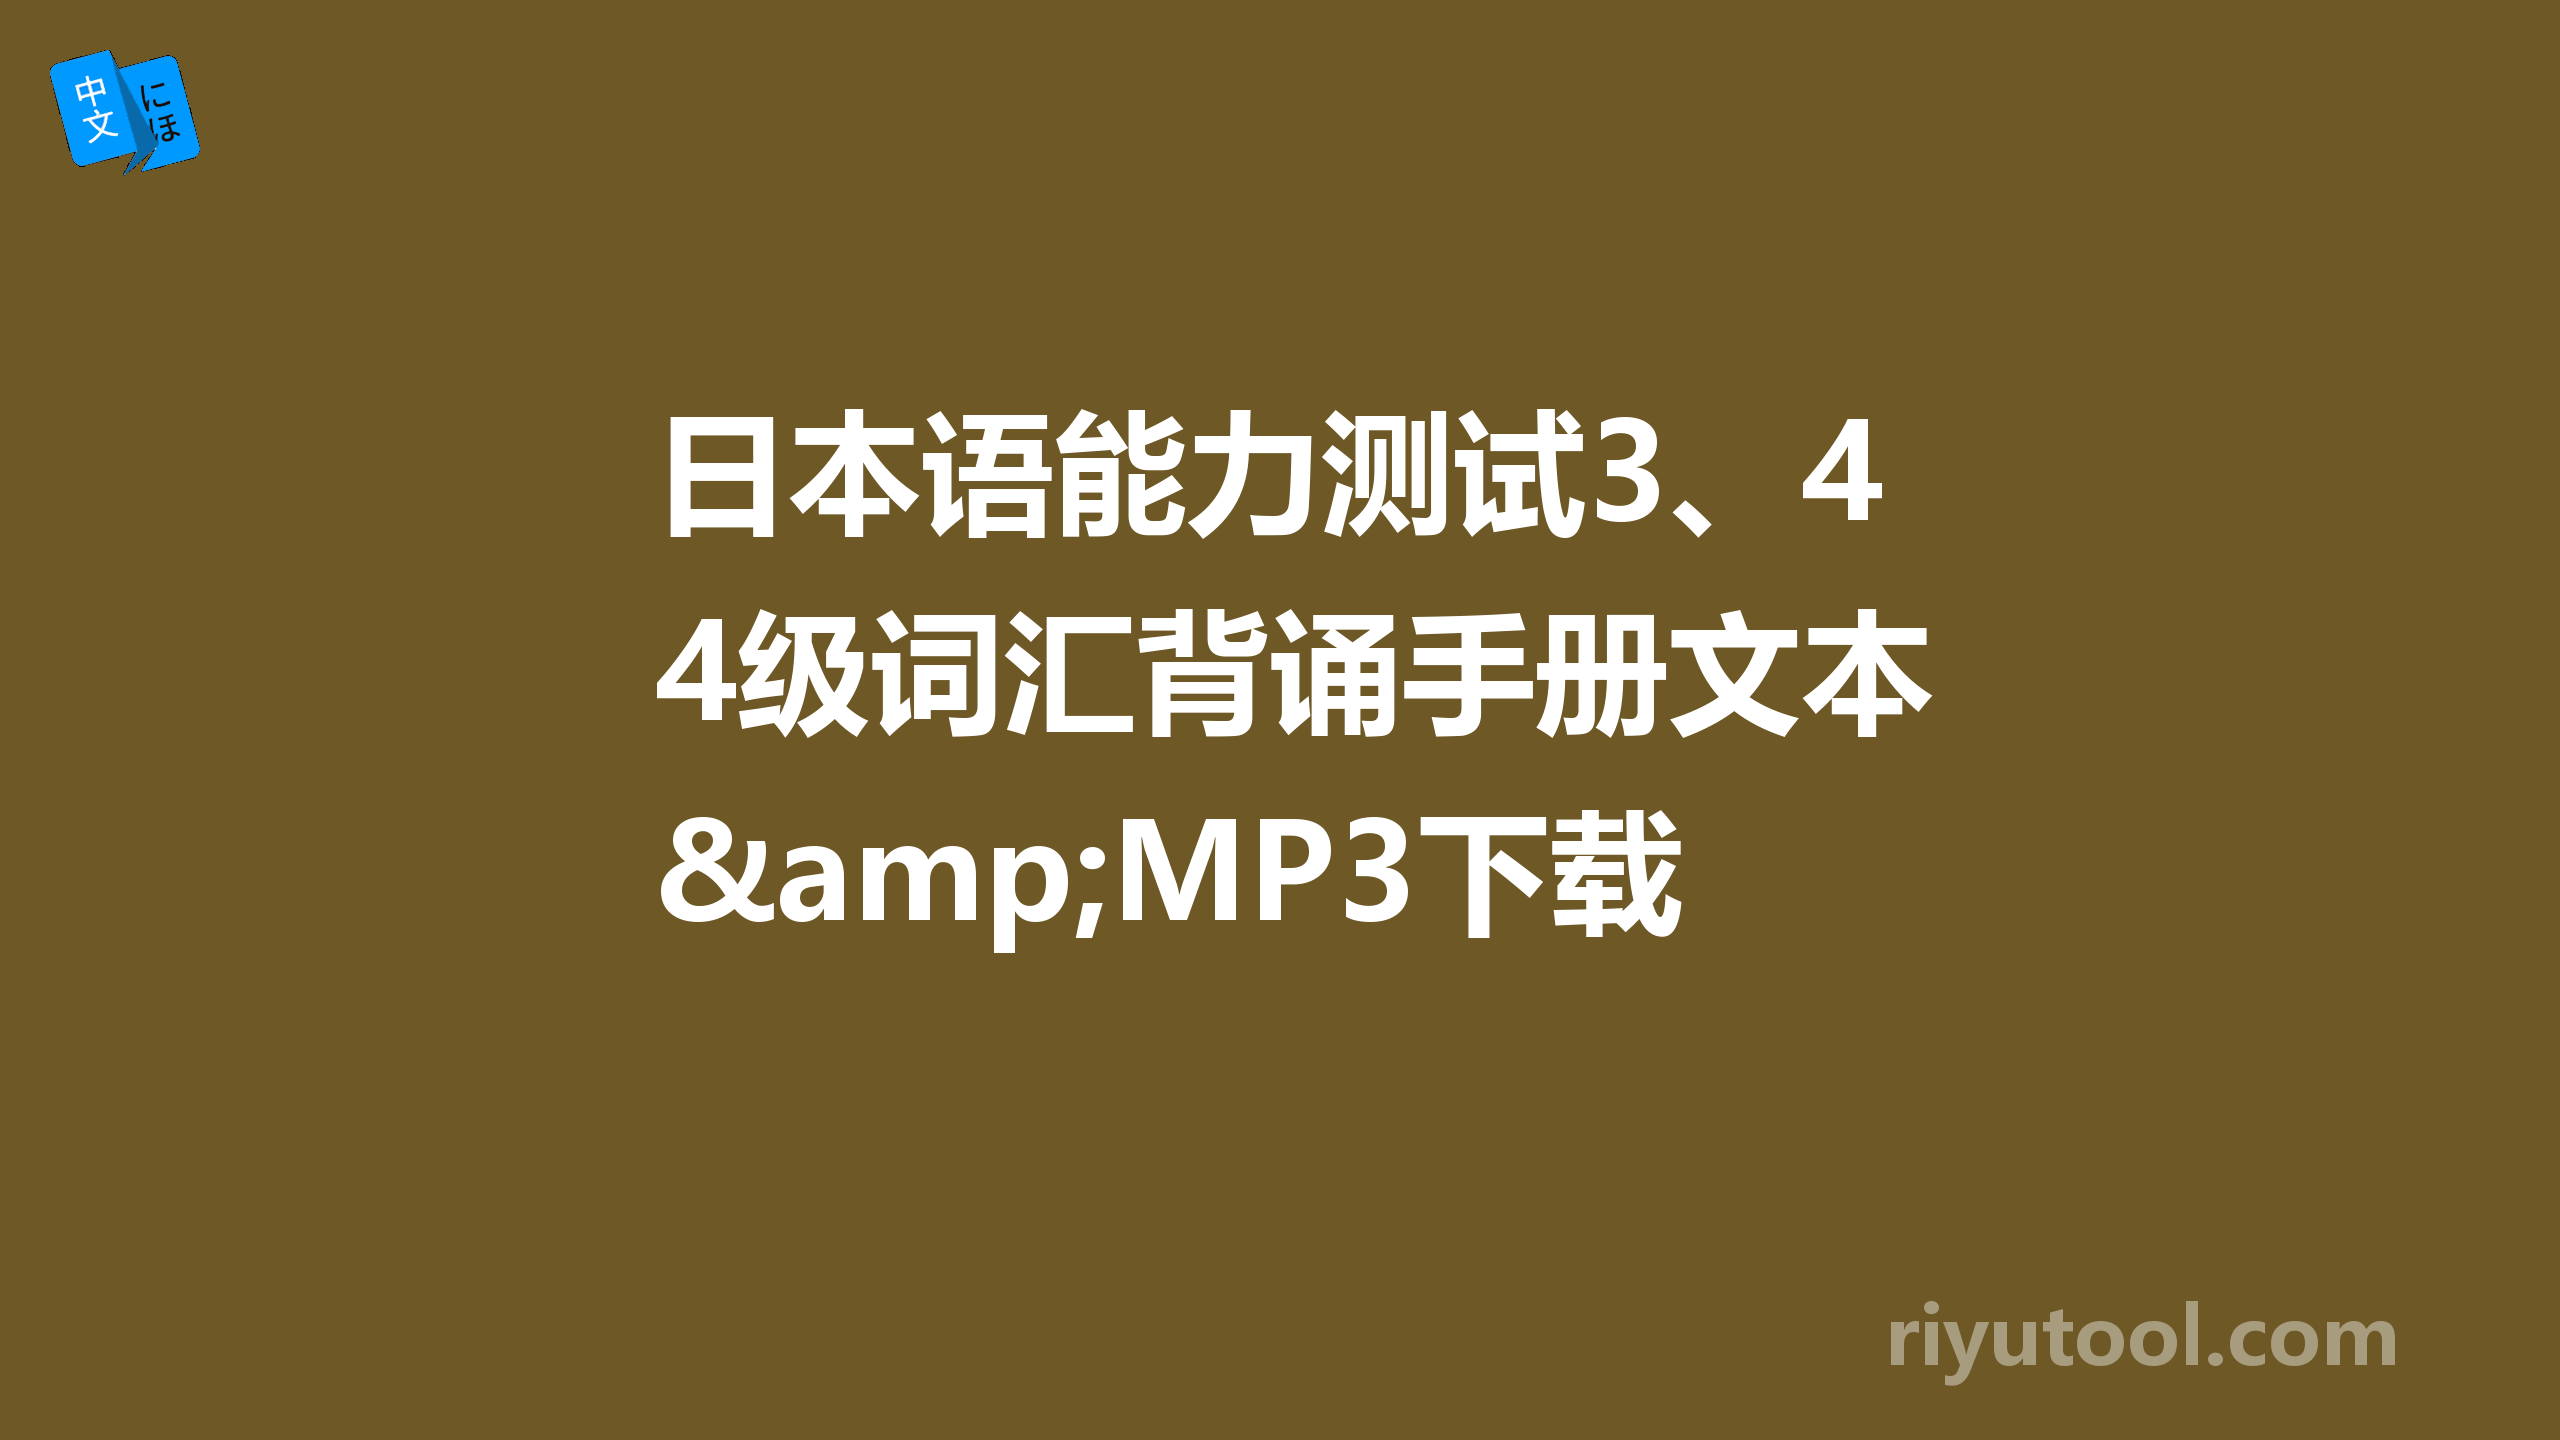 日本语能力测试3、4级词汇背诵手册文本&MP3下载(页 1)  